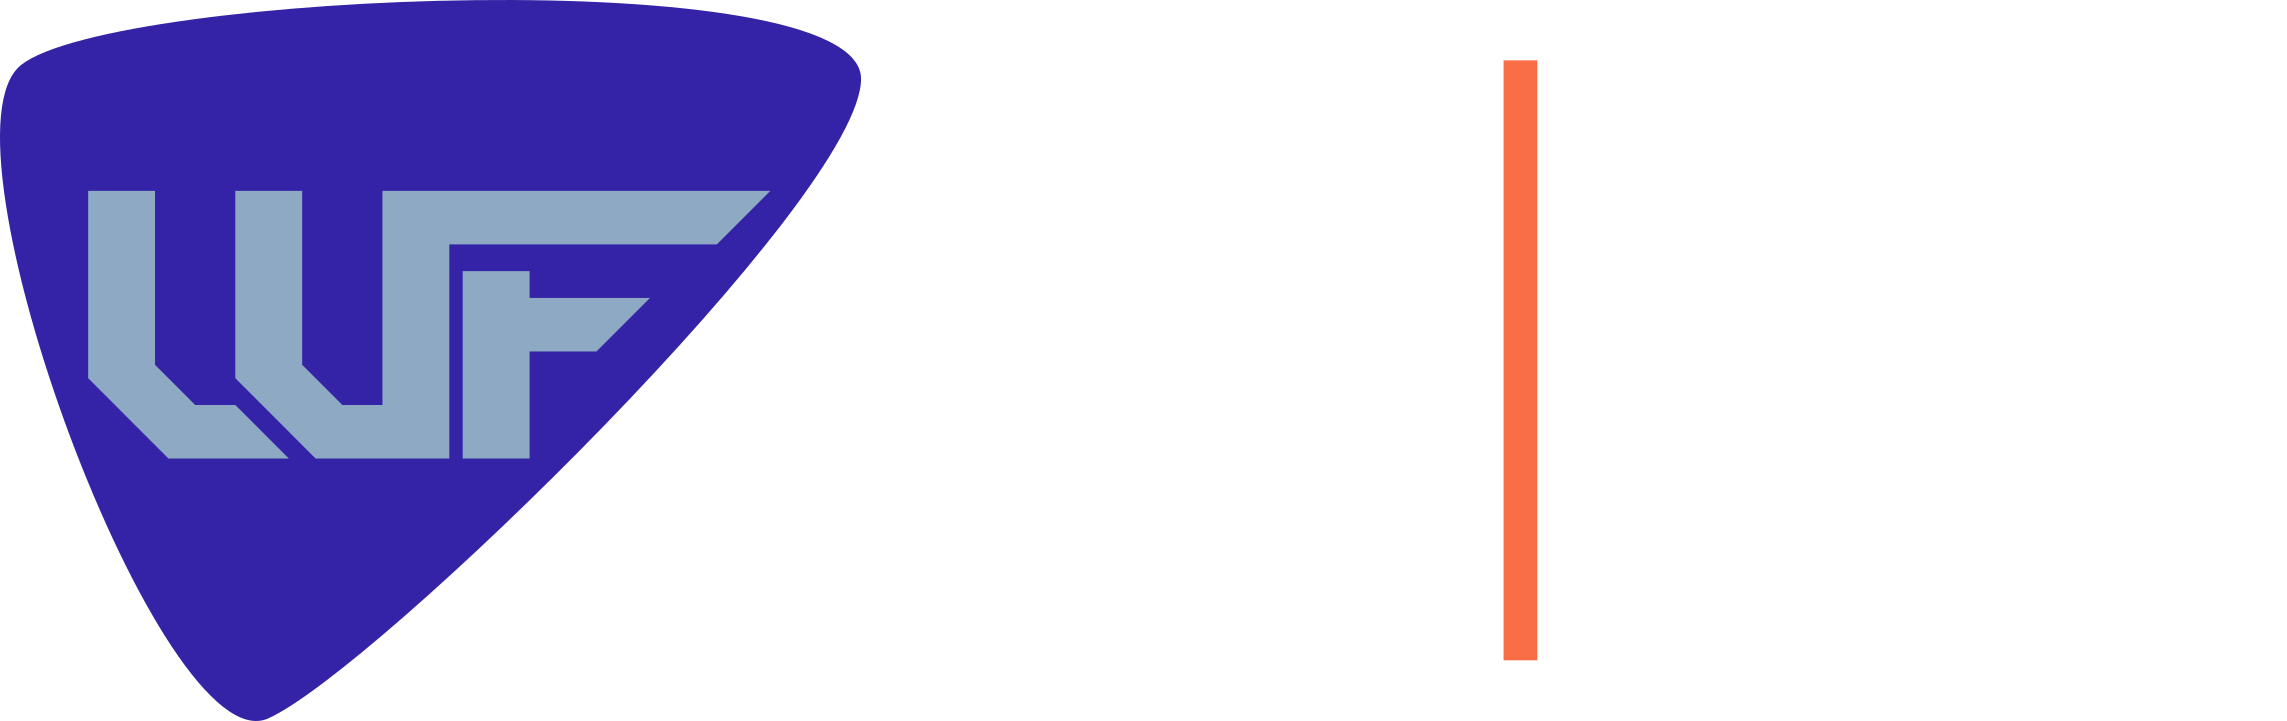 Wordle Finder logo